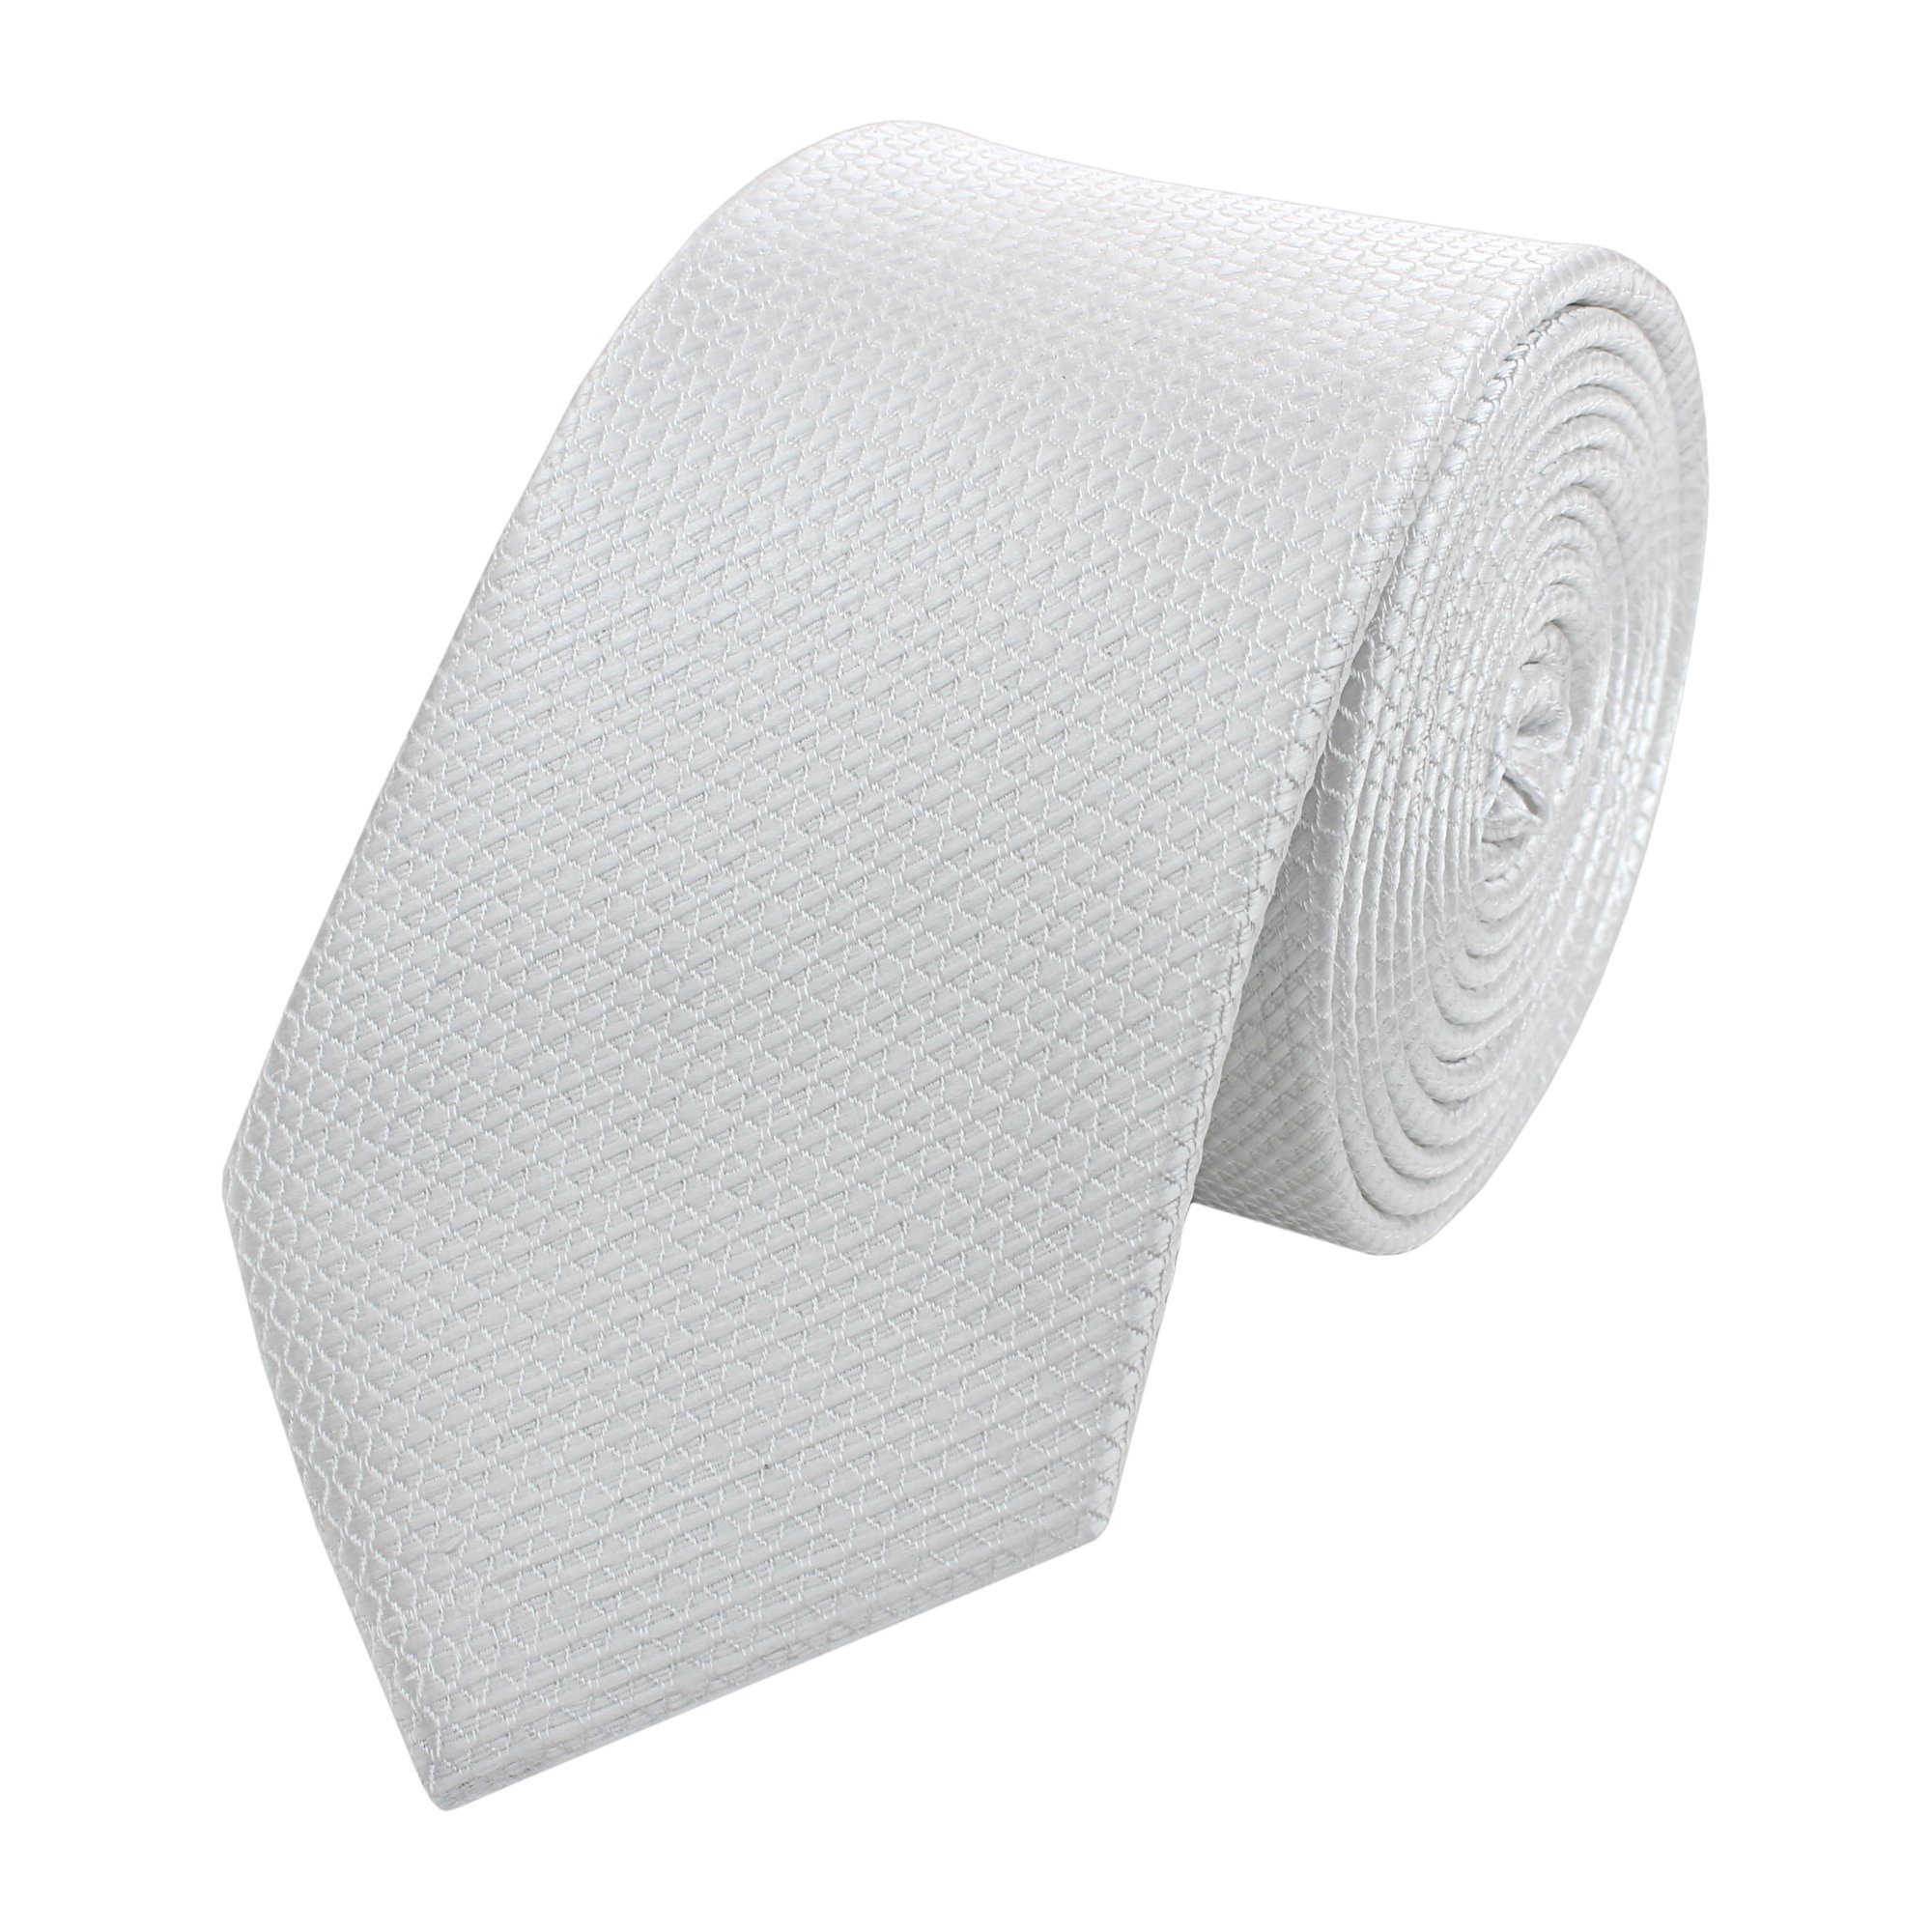 Fabio Farini Krawatte Herren Krawatte Silver Weiße in Dollar (Unifarben) Weiß - 6cm Männer Weiß (6cm), Silber Schmal verschiedene Schlips 